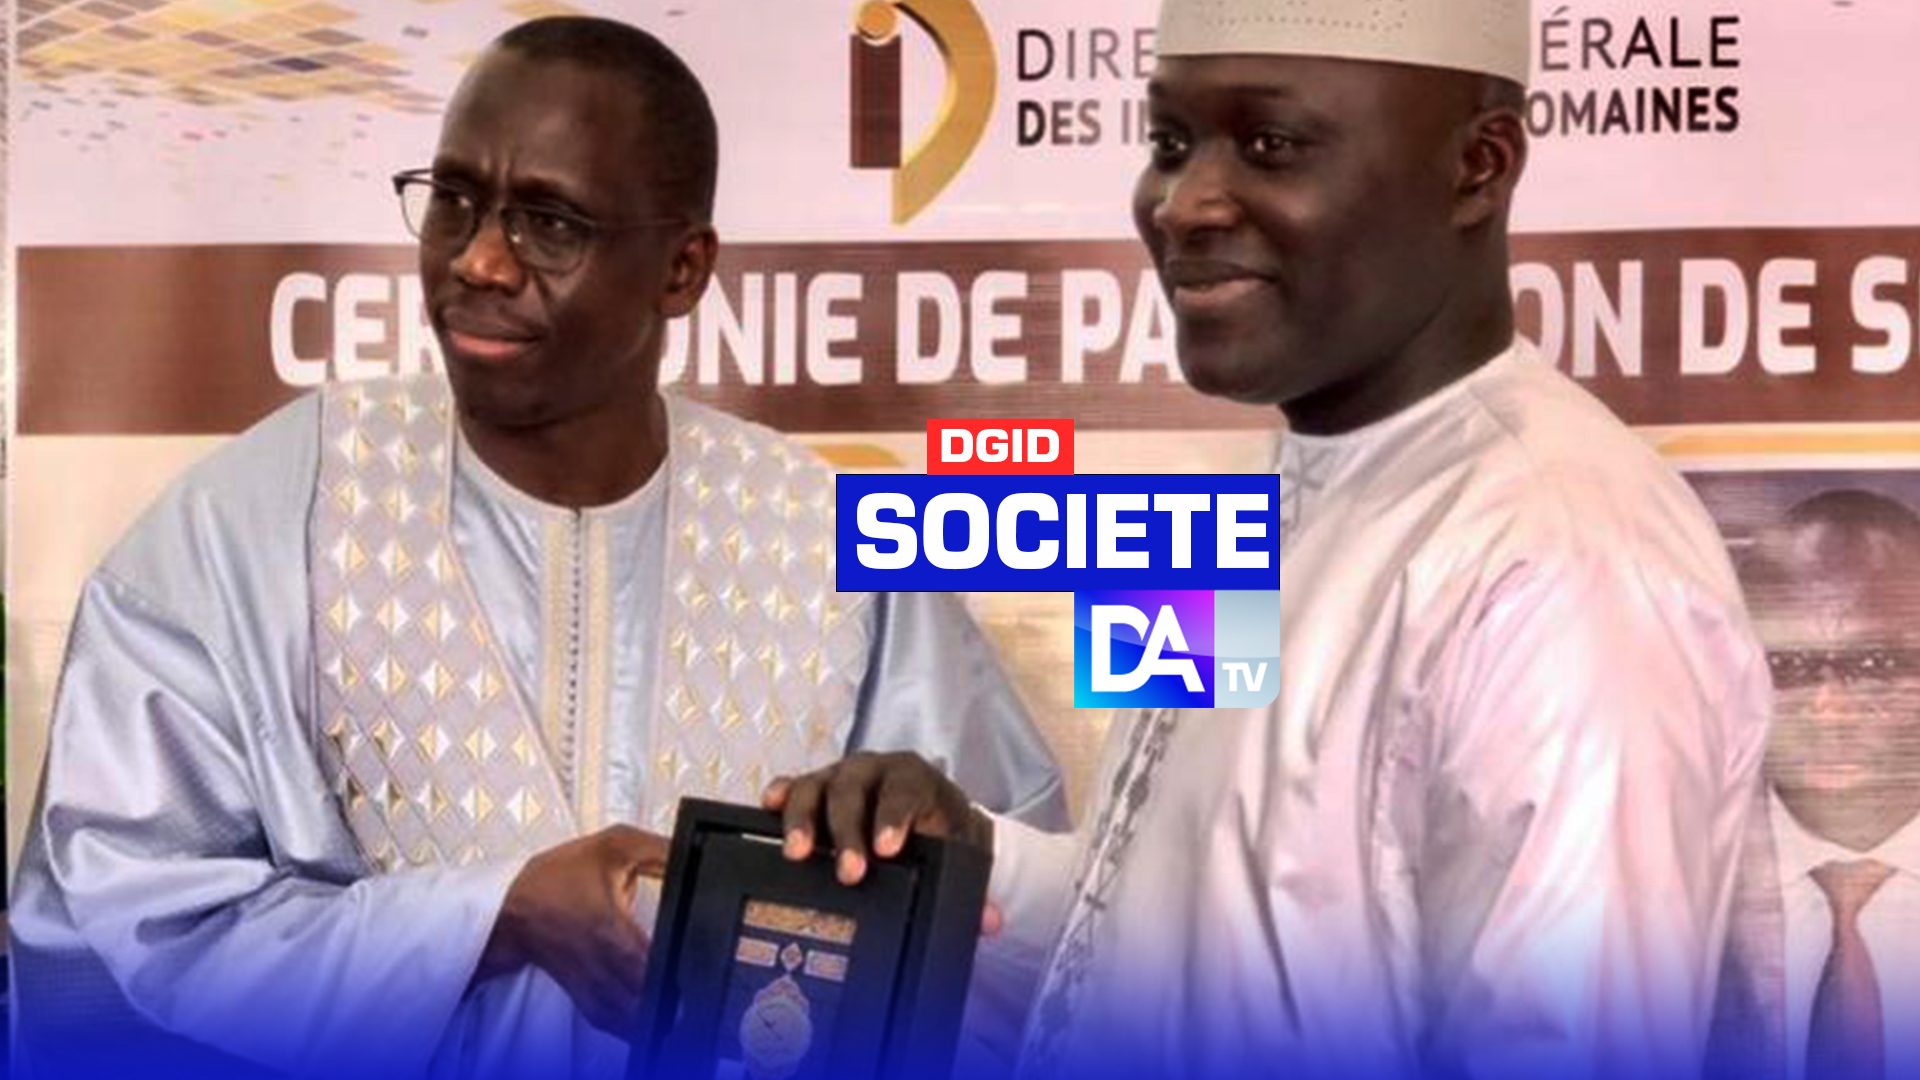 DGID : le nouveau DG Abdoulaye Diagne prend prend fonction et s’inscrit dans la consolidation des acquis.